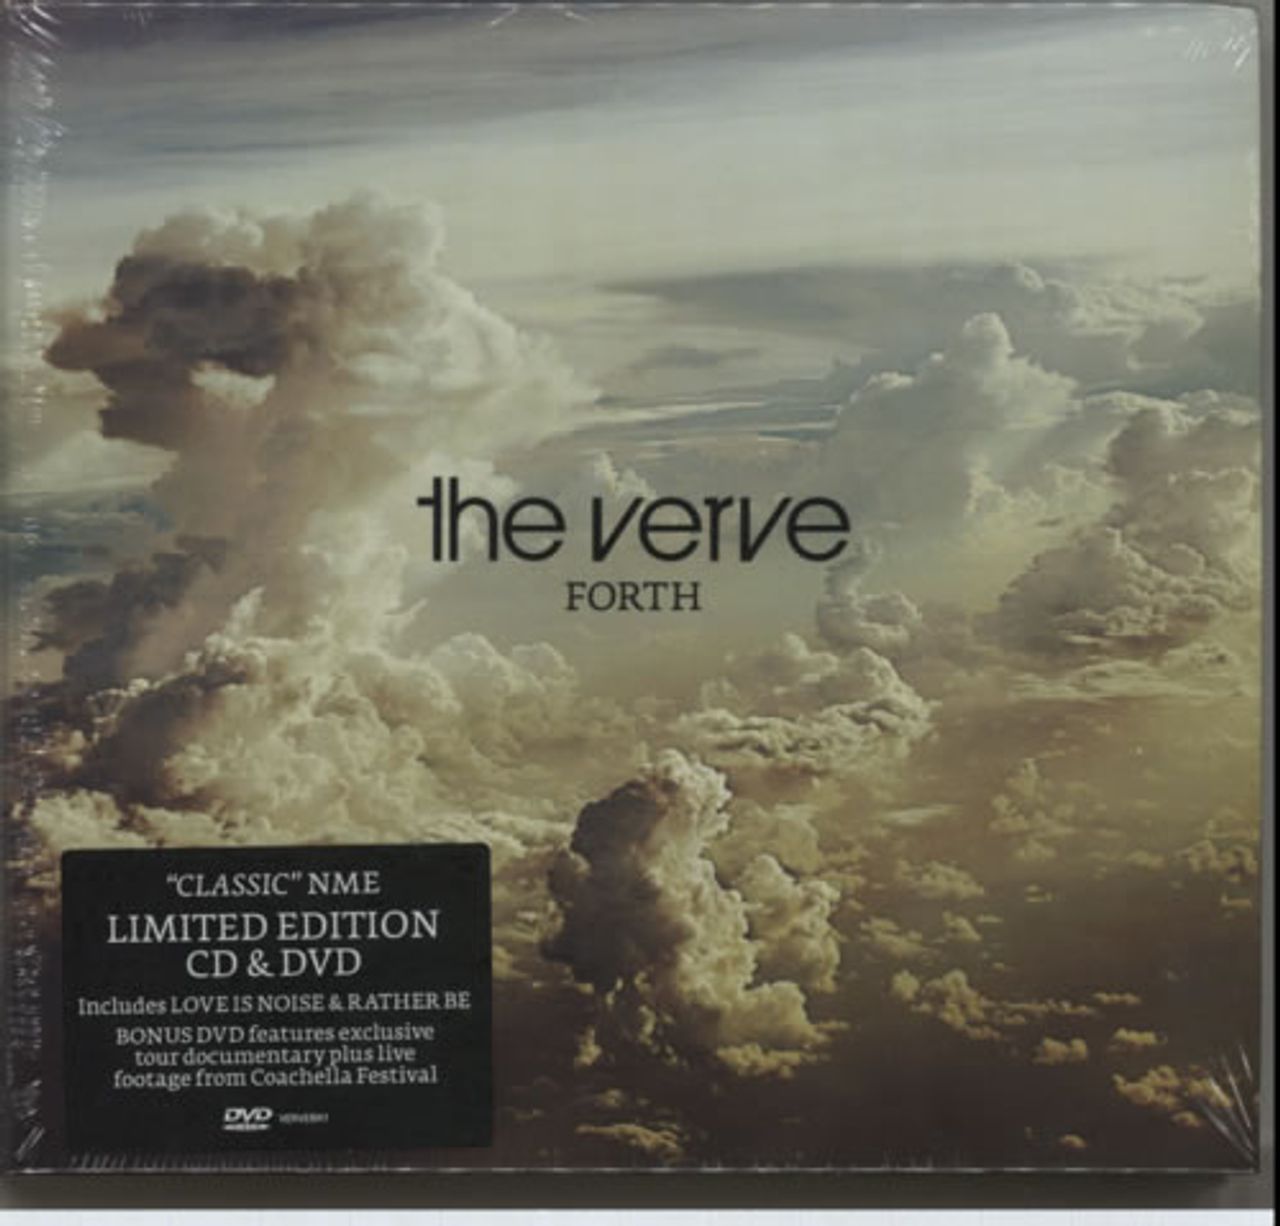 The Verve Forth UK 2-disc CD/DVD set VERVEBK1